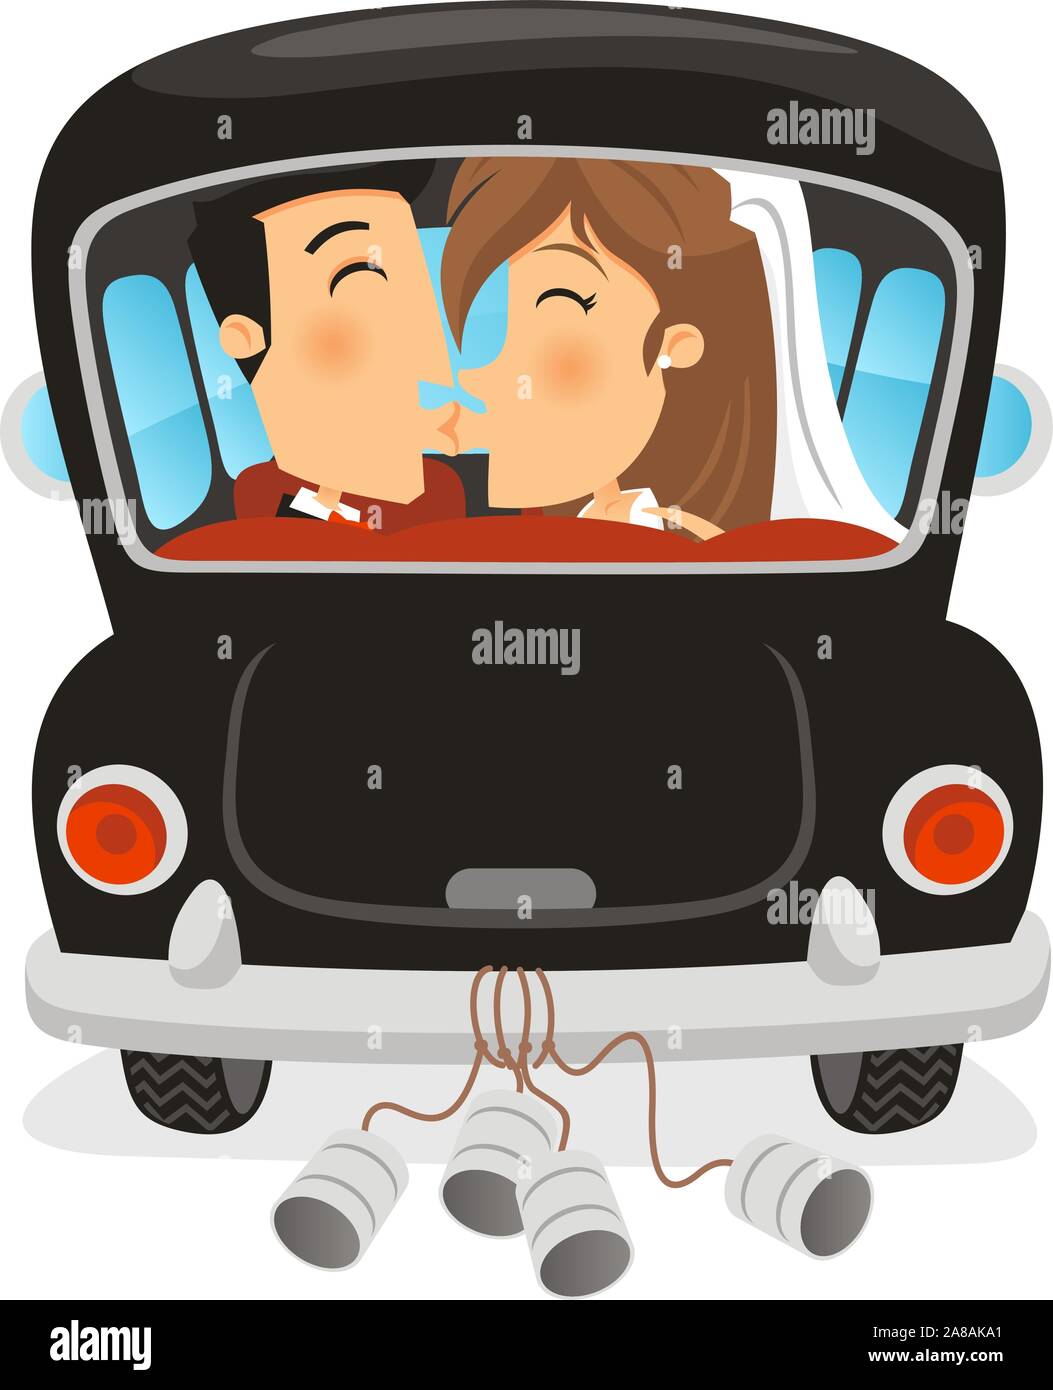 1,783 imágenes, fotos de stock, objetos en 3D y vectores sobre Just married  car illustration